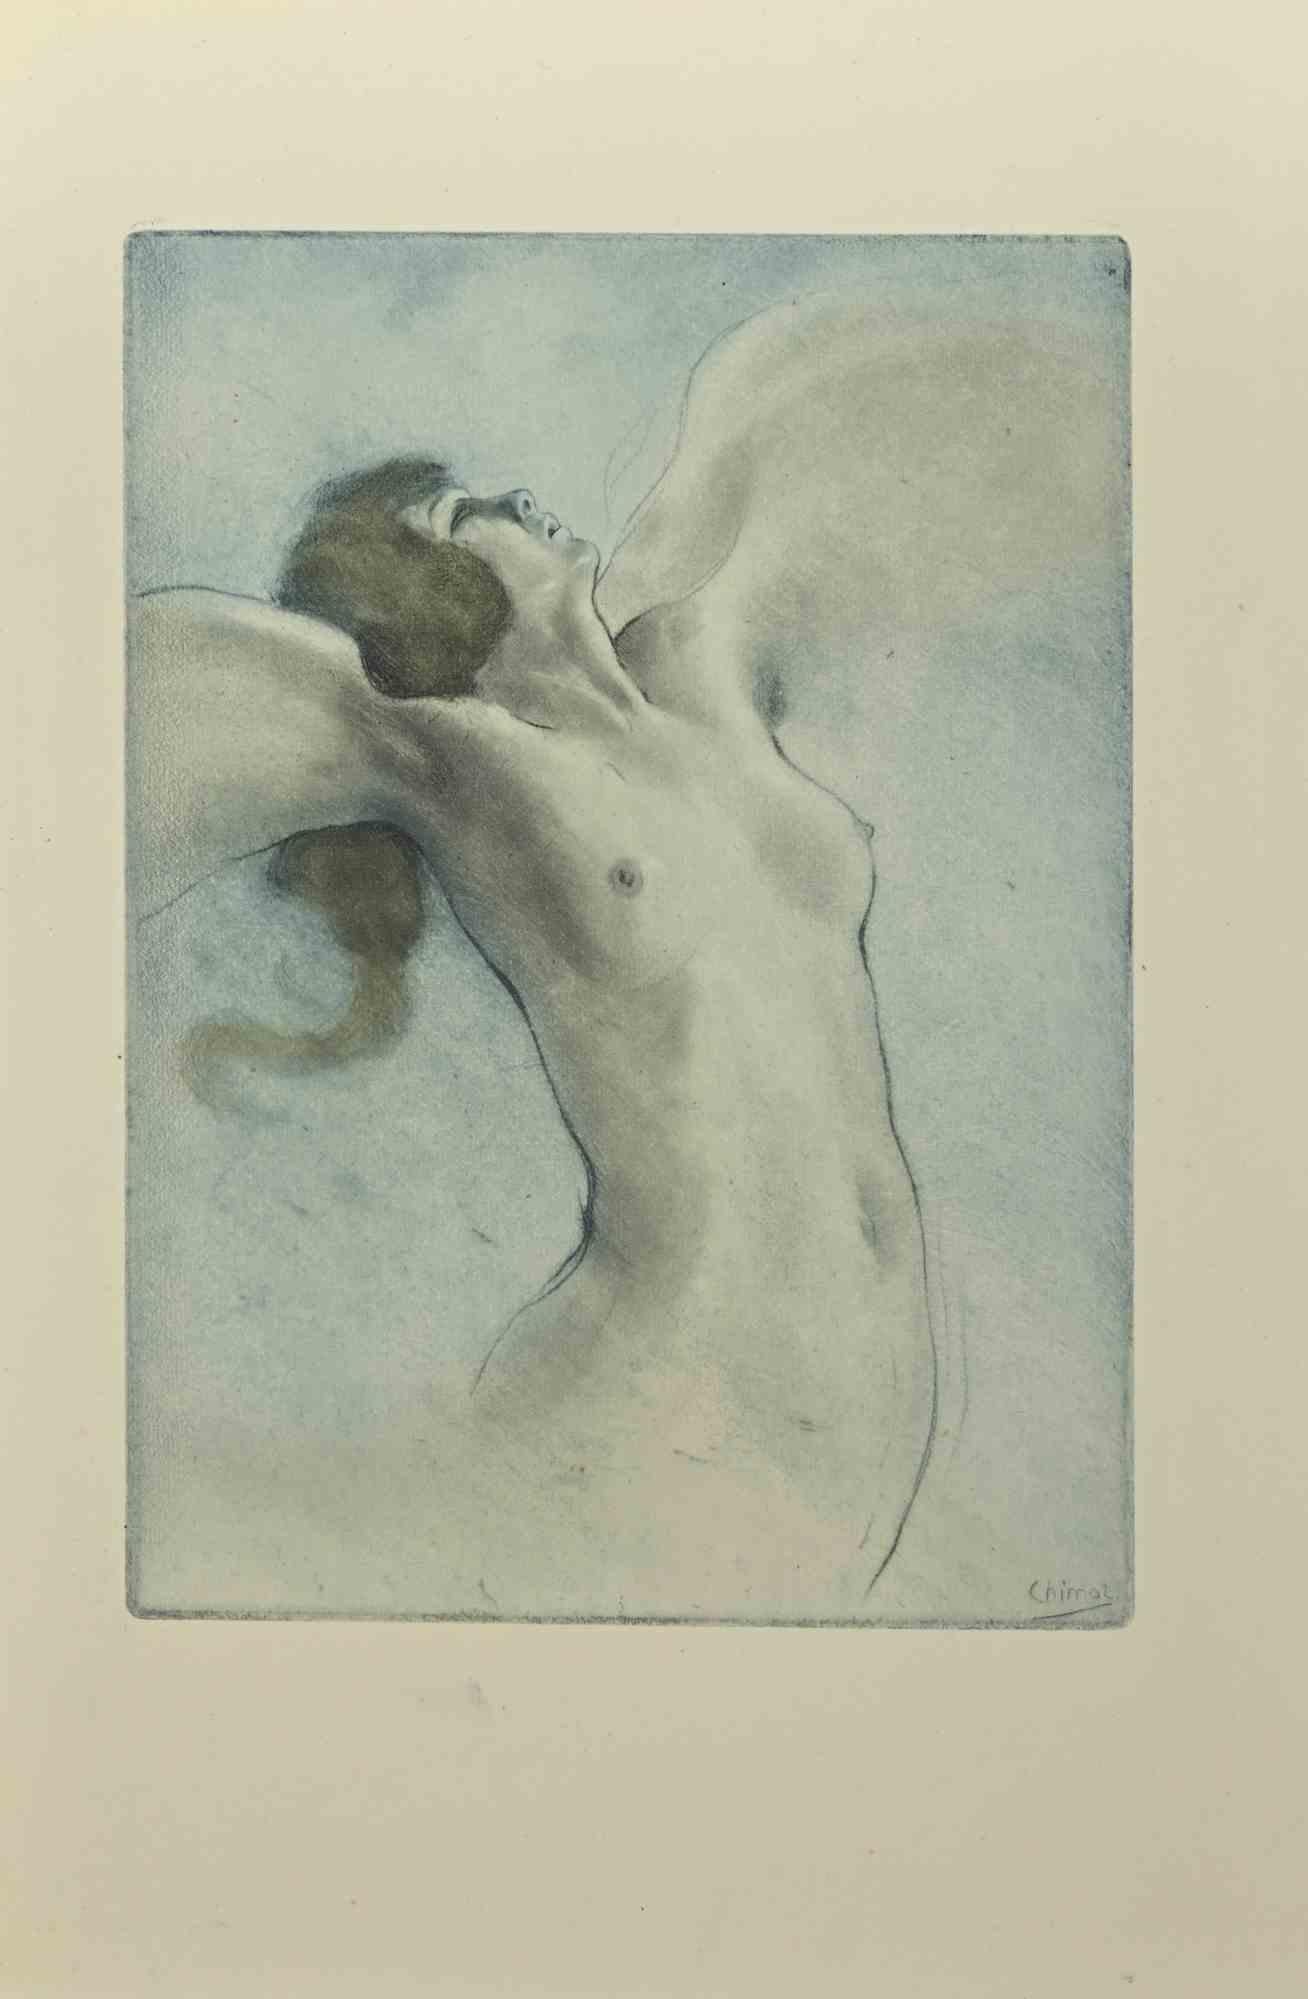 Akt mit Flügeln ist eine Radierung von Edouard Chimot aus den 1930er Jahren.

Signiert auf der Platte vom Künstler in der rechten unteren Ecke.

Gute Bedingungen.

Édouard Chimot (26. November 1880 - 7. Juni 1959) war ein französischer Künstler,